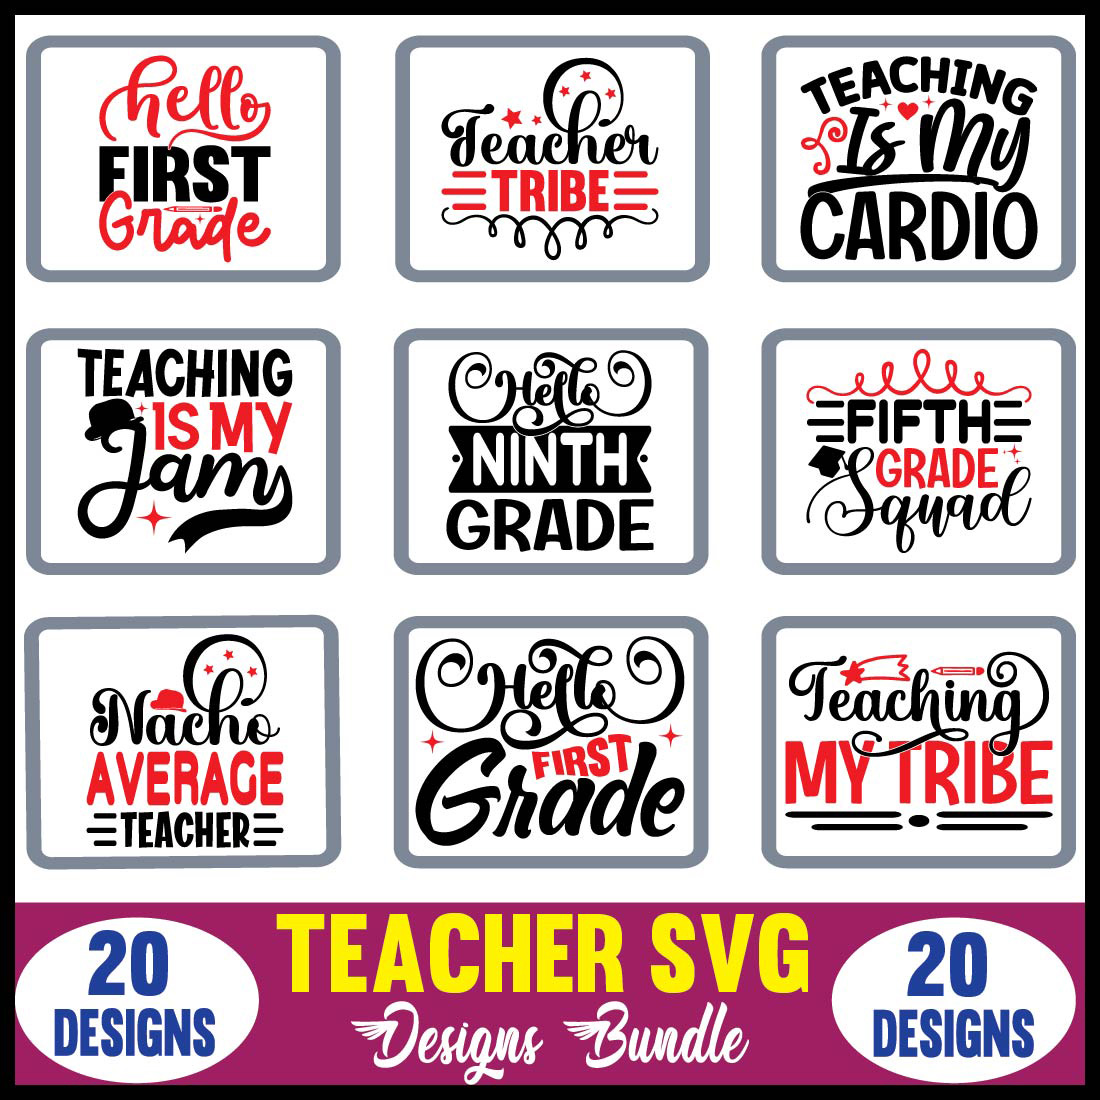 Teacher SVG Designs Bundle main cover image.